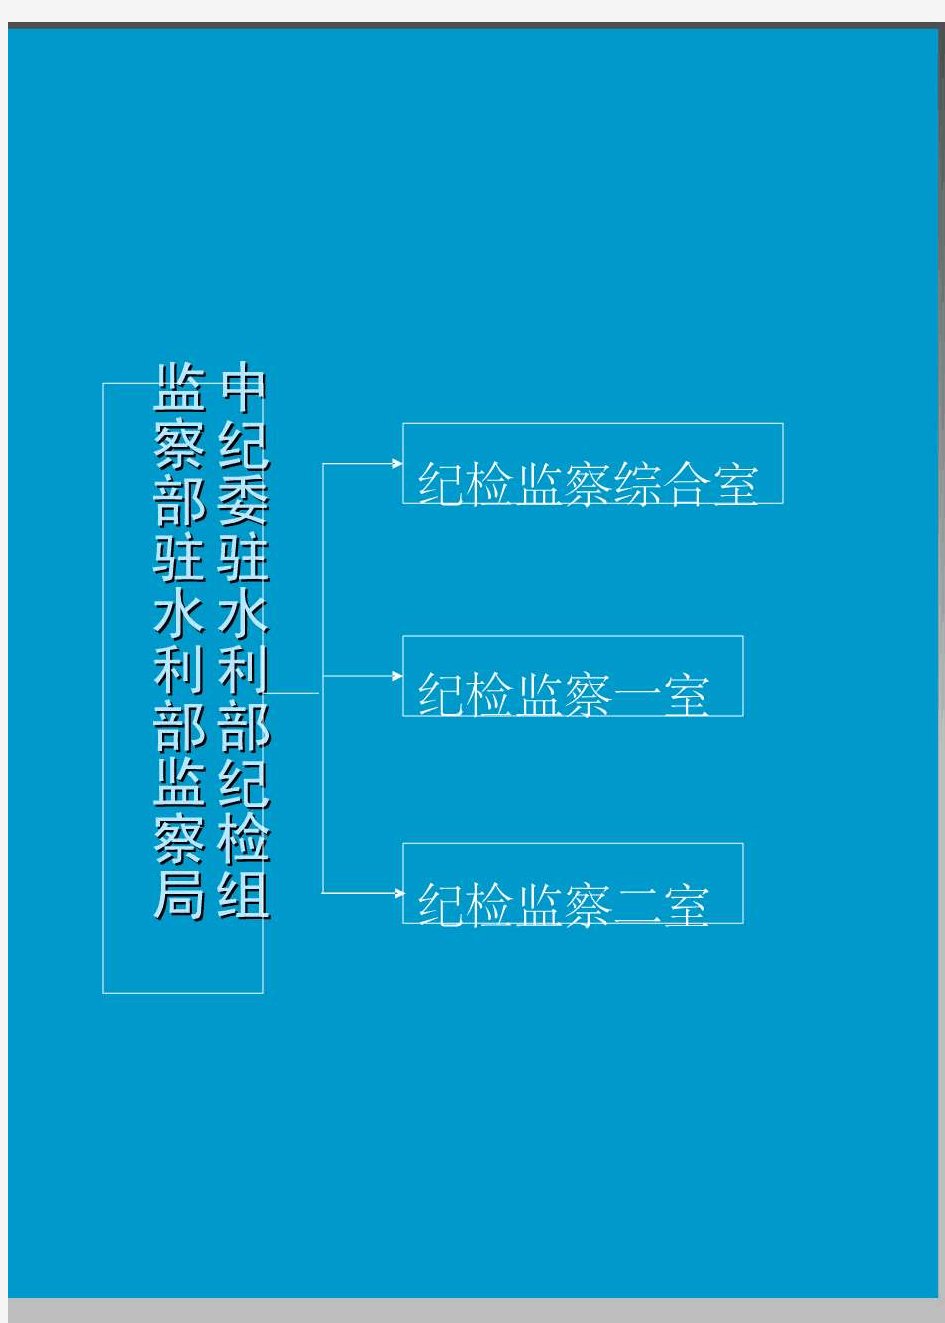 水利部直属单位机构框图 - 中华人民共和国水利部网站